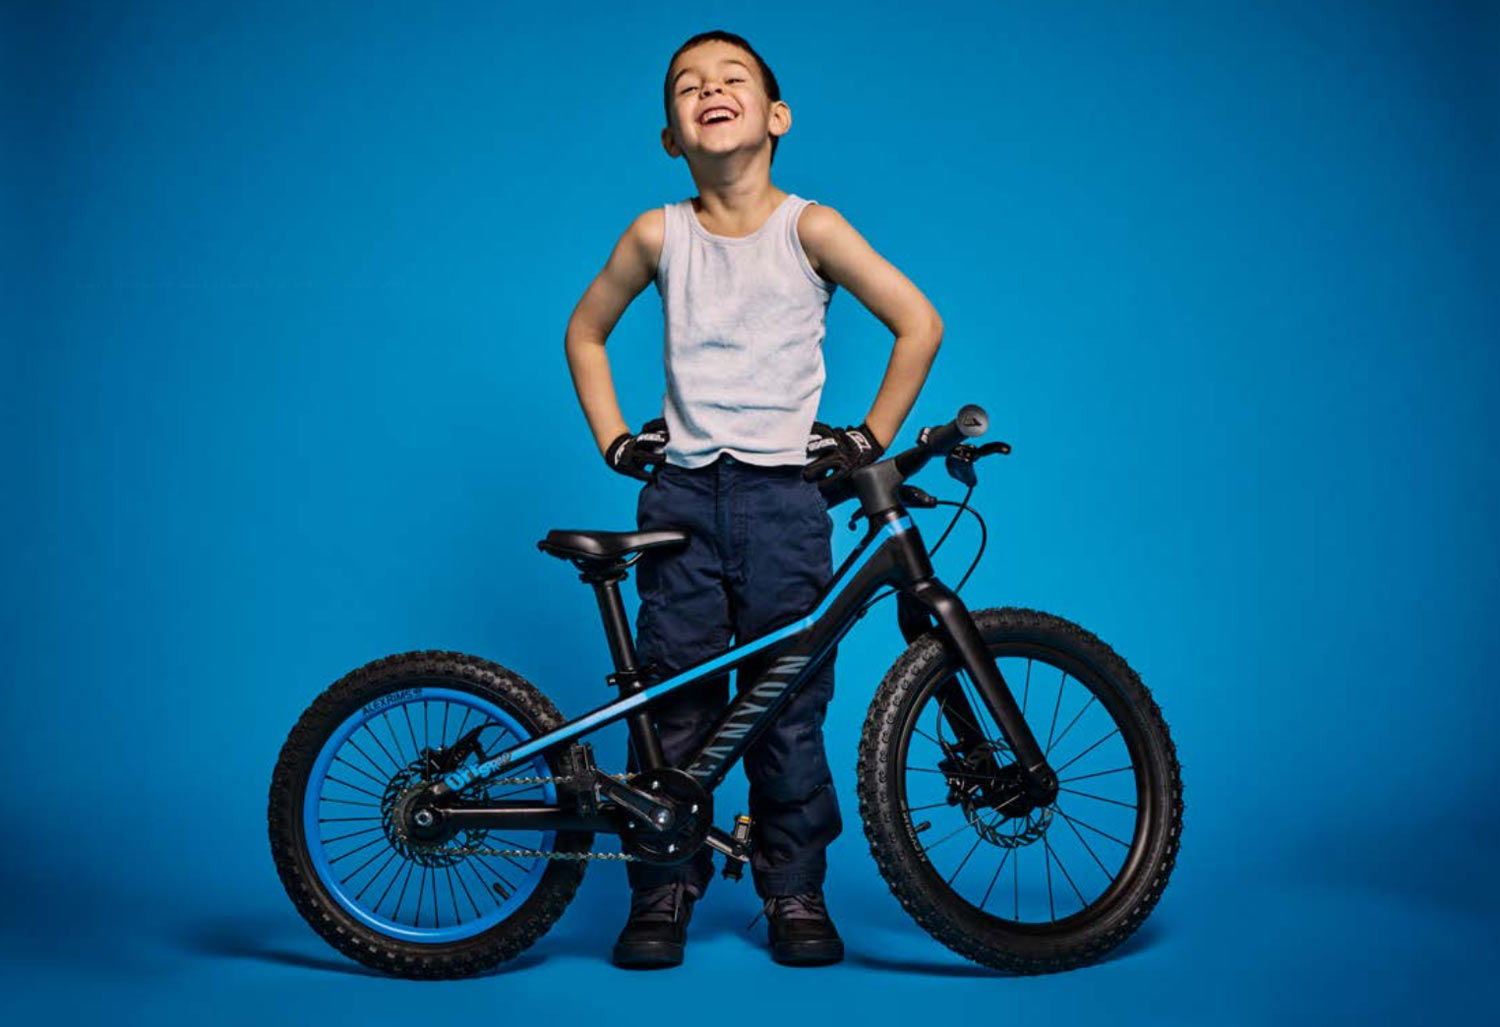 Canyon kids bikes 2017